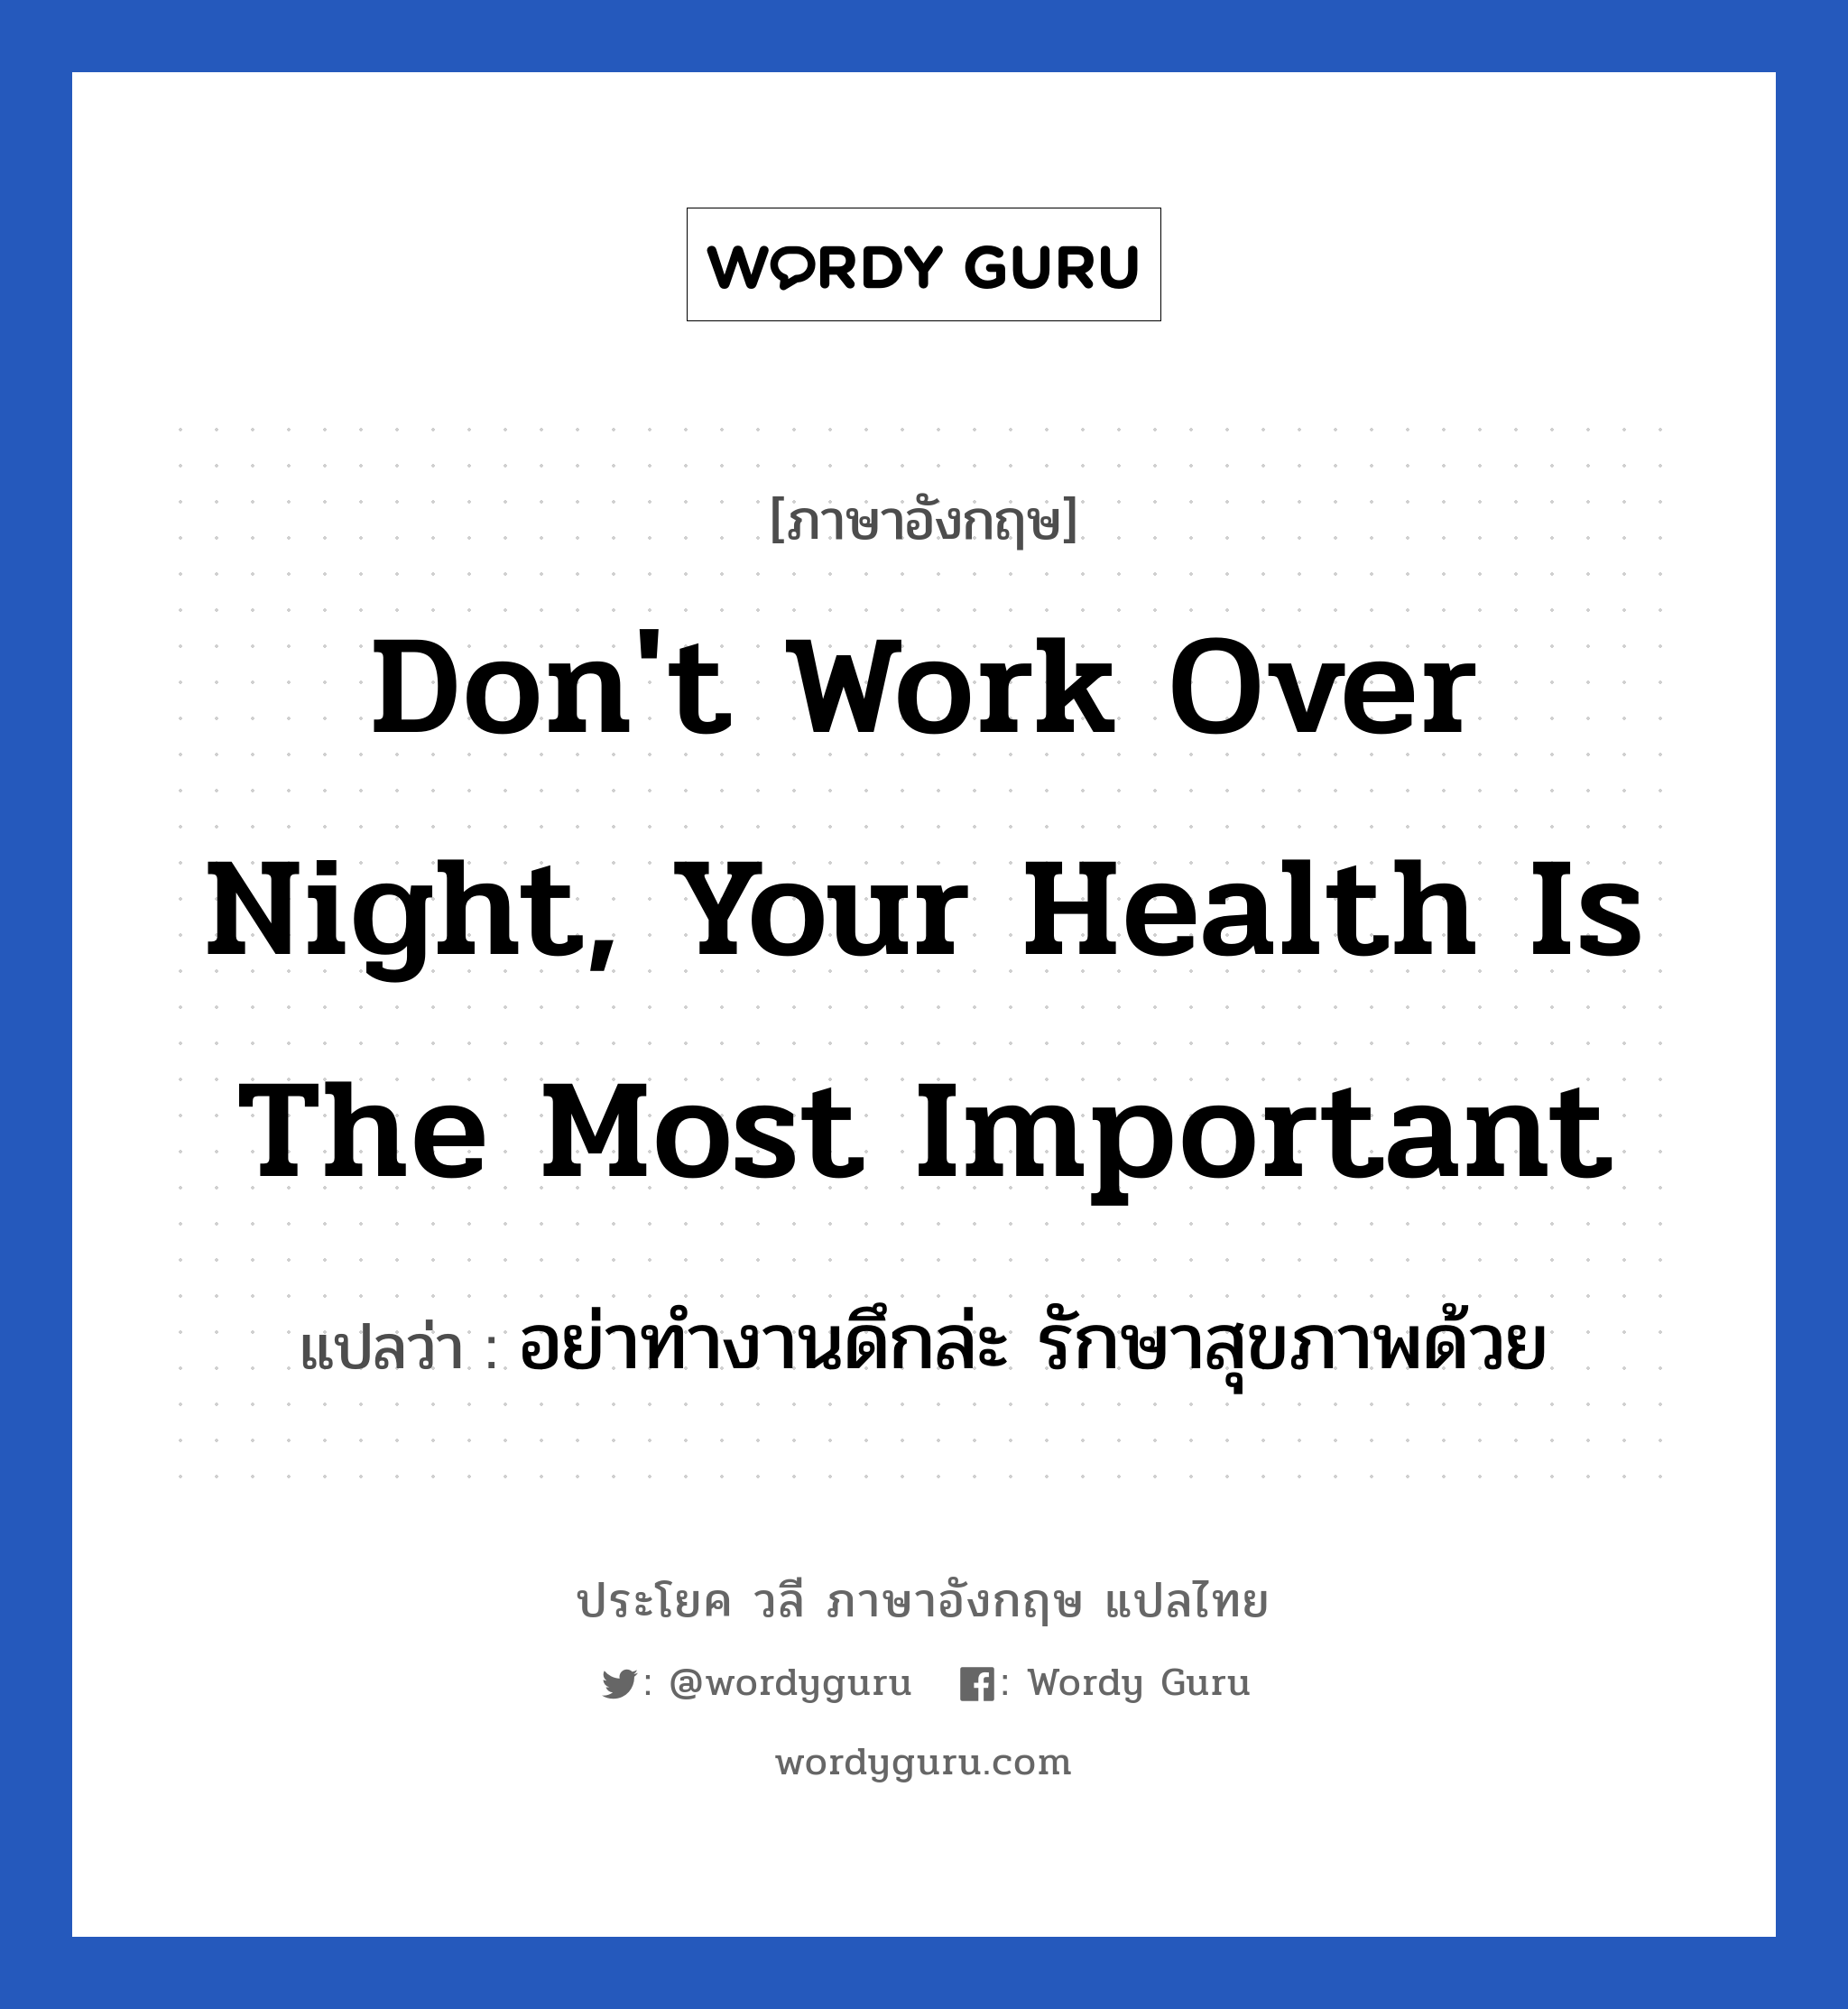 อย่าทำงานดึกล่ะ รักษาสุขภาพด้วย ภาษาอังกฤษ?, วลีภาษาอังกฤษ อย่าทำงานดึกล่ะ รักษาสุขภาพด้วย แปลว่า Don't work over night, Your health is the most important หมวด ในที่ทำงาน